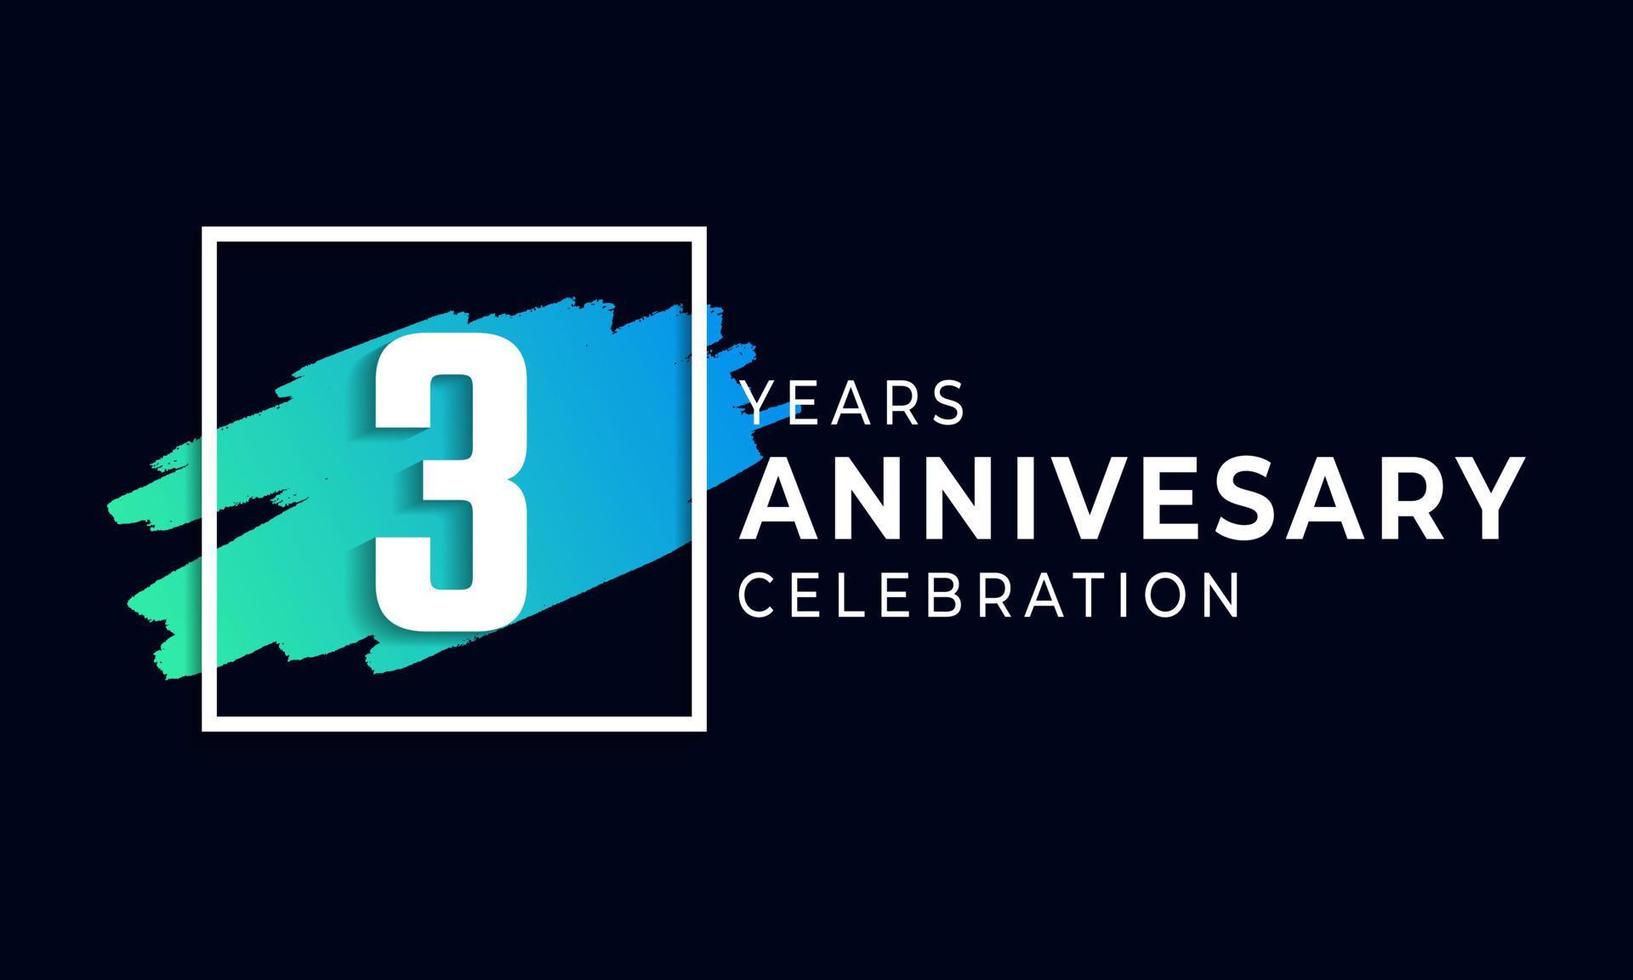 3-jarig jubileumfeest met blauwe borstel en vierkant symbool. gelukkige verjaardag groet viert gebeurtenis geïsoleerd op zwarte achtergrond vector